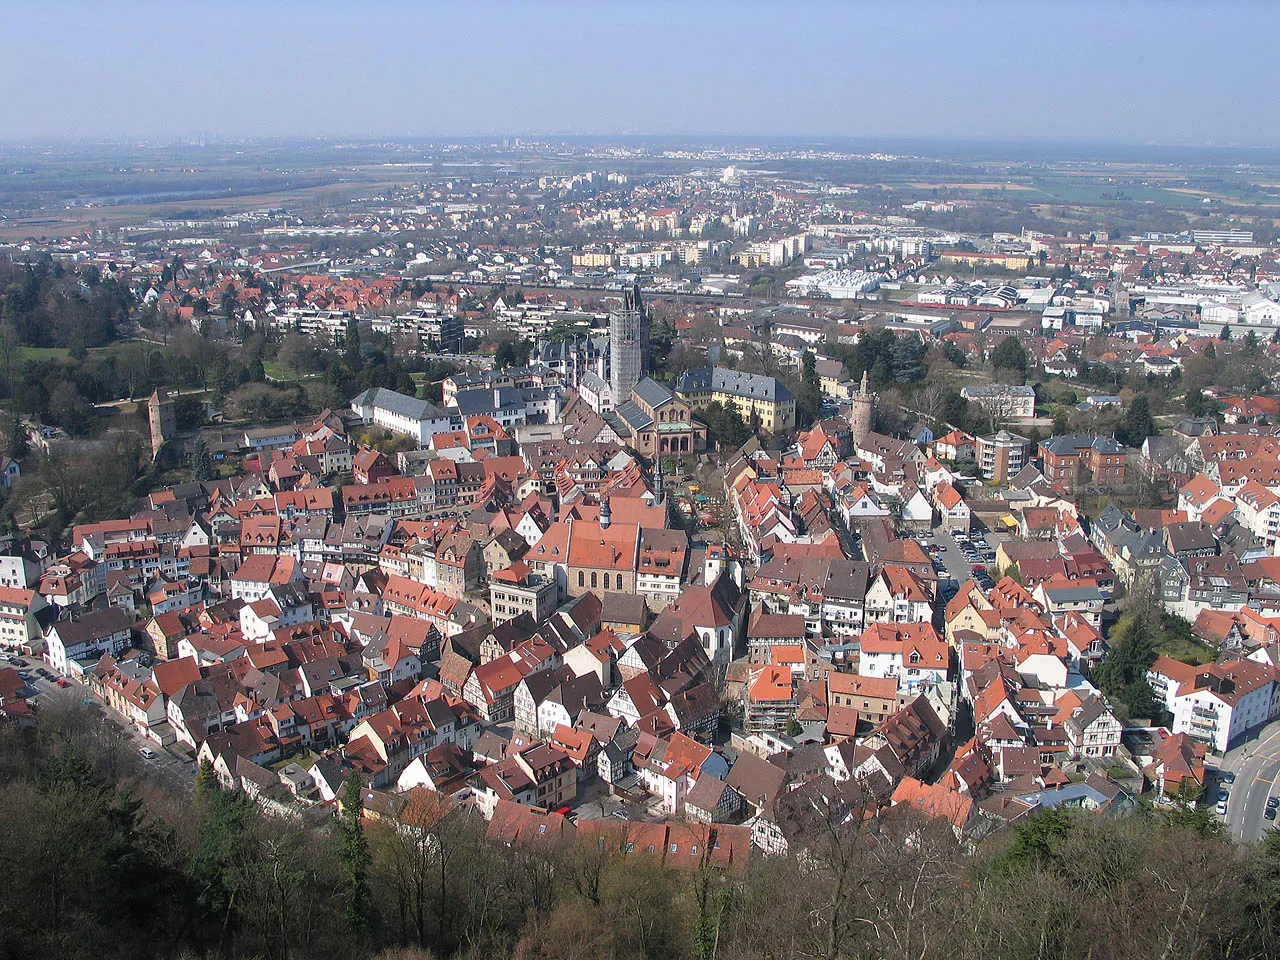 Image of Weinheim